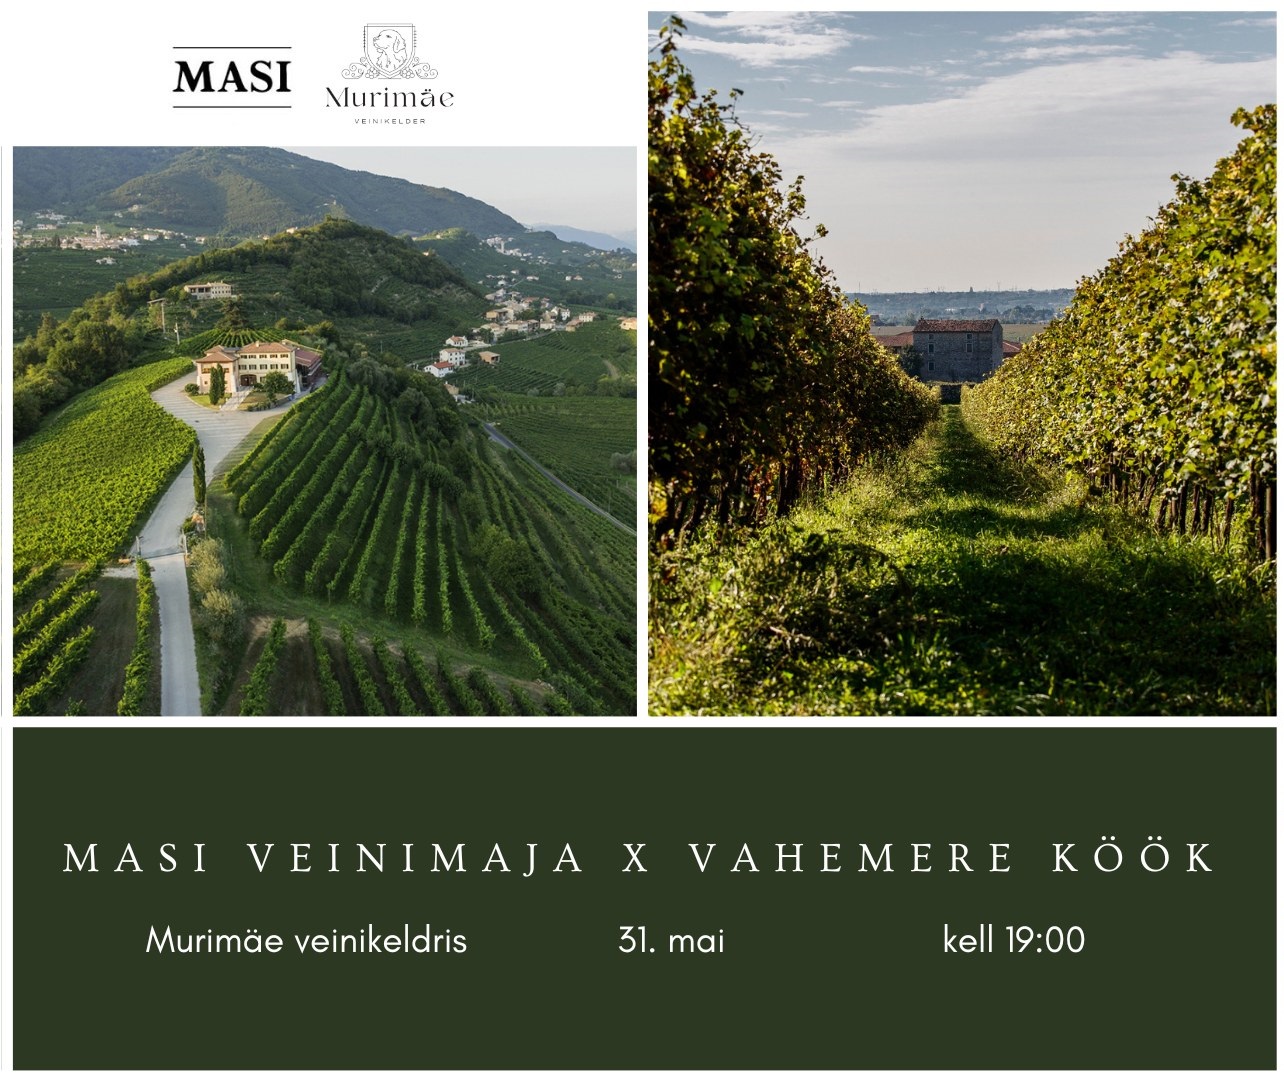   Murimäe Veinikeldril on hea meel, et võib teile pakkuda erakordset Vahemere õhtusööki koostöös Masi veinimajaga, mis on üks Valpolicella piirkonna auväärsemai